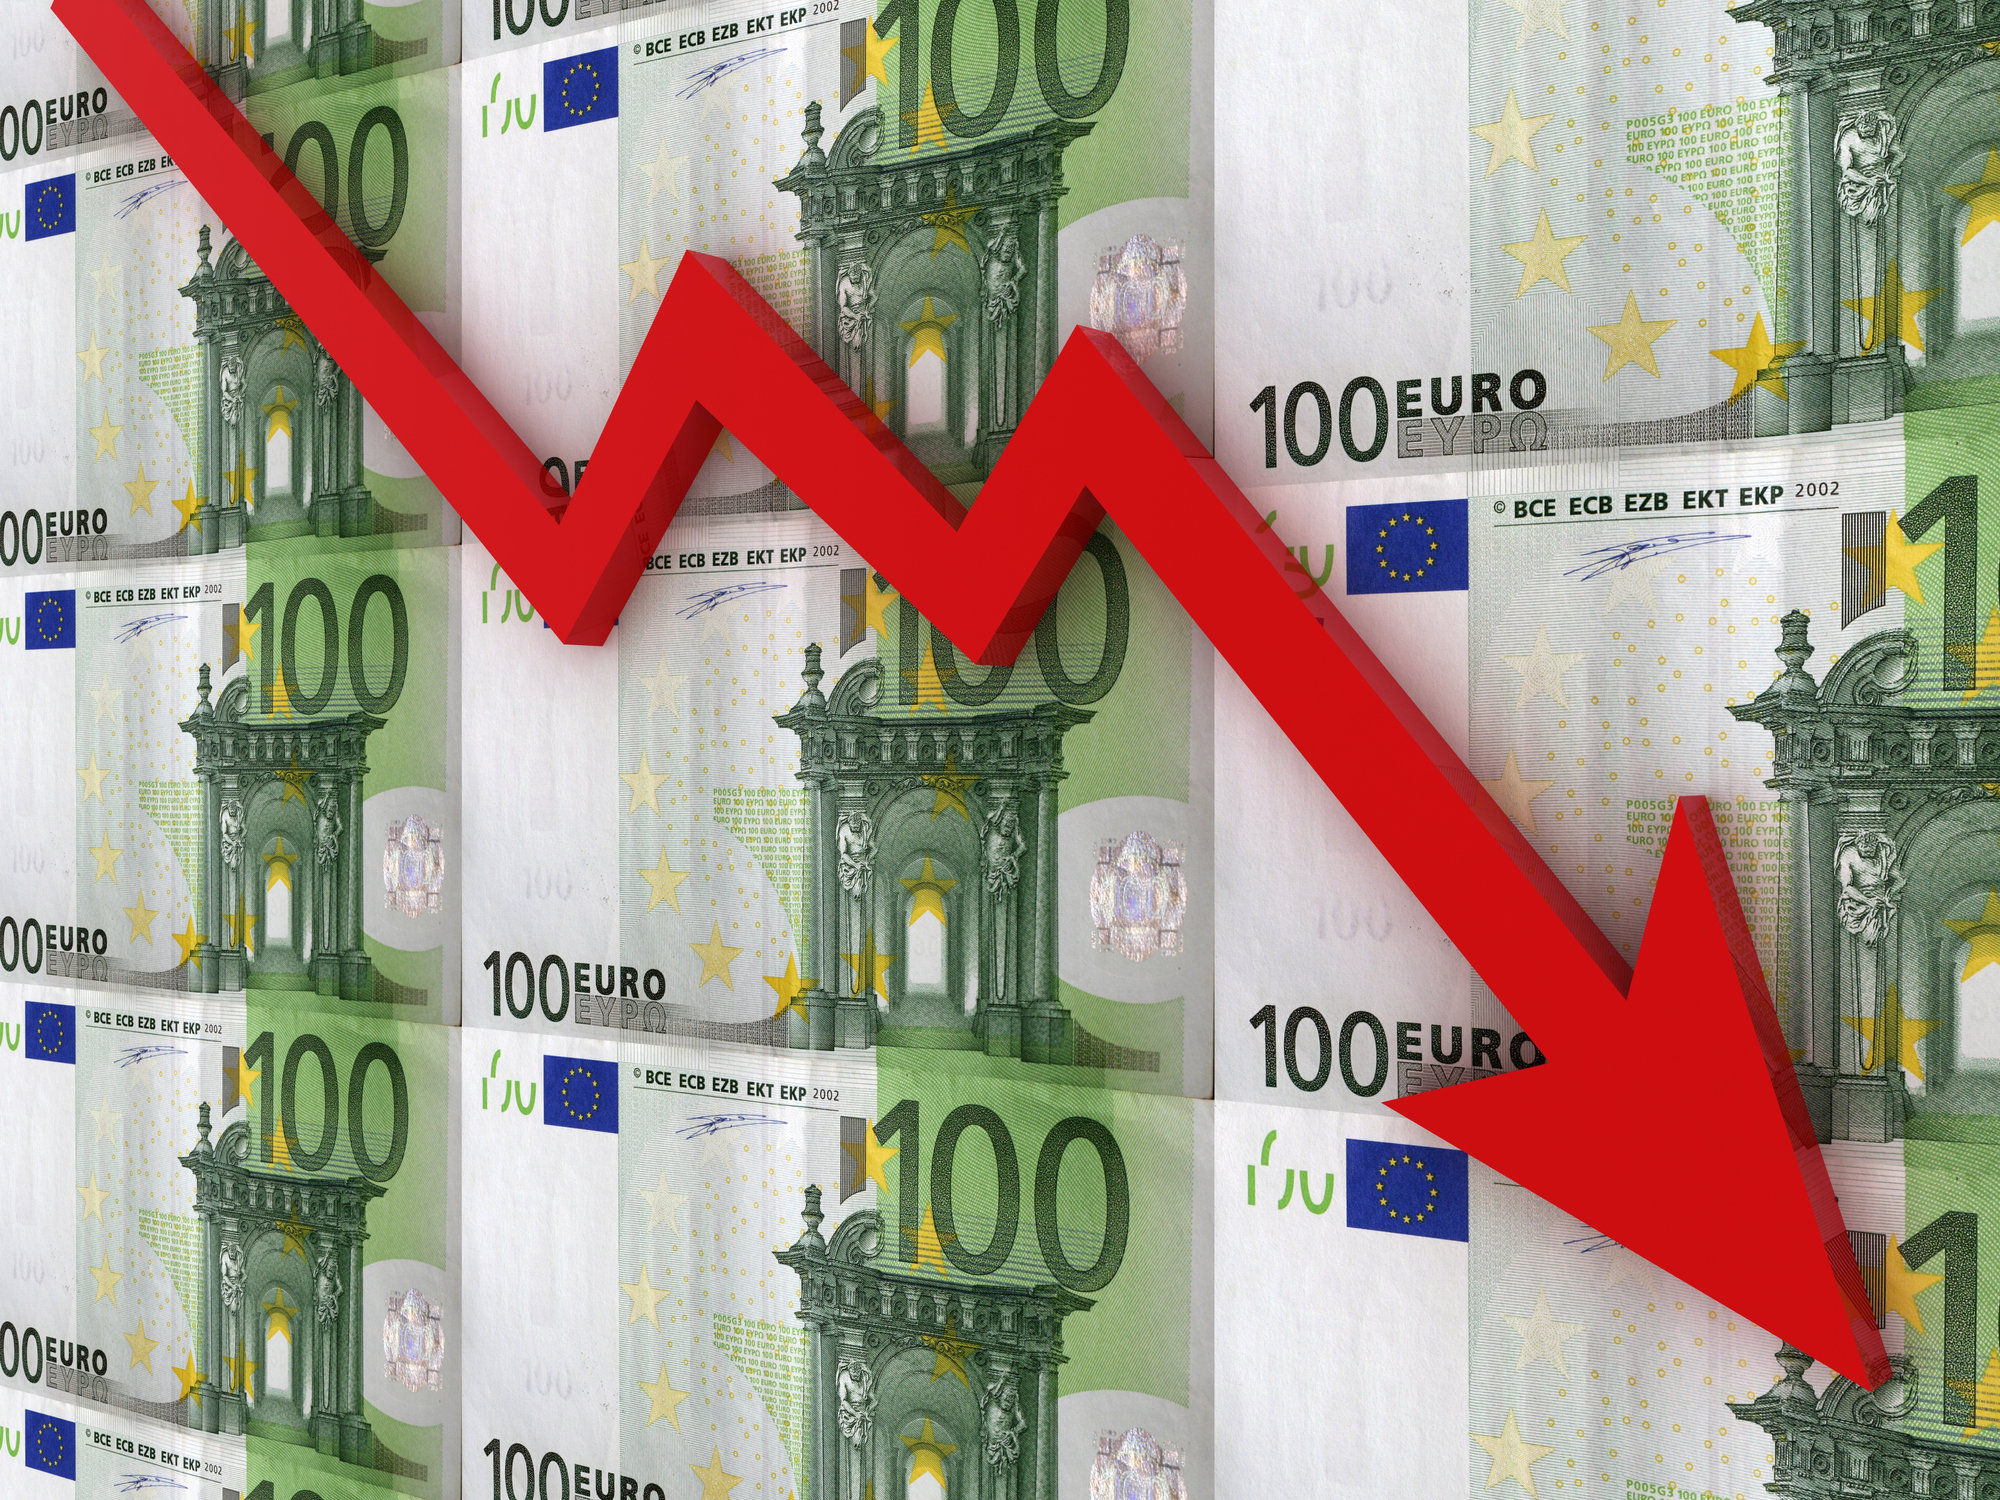 Водещите фондови борси в Европа закриха днешната търговска сесия с